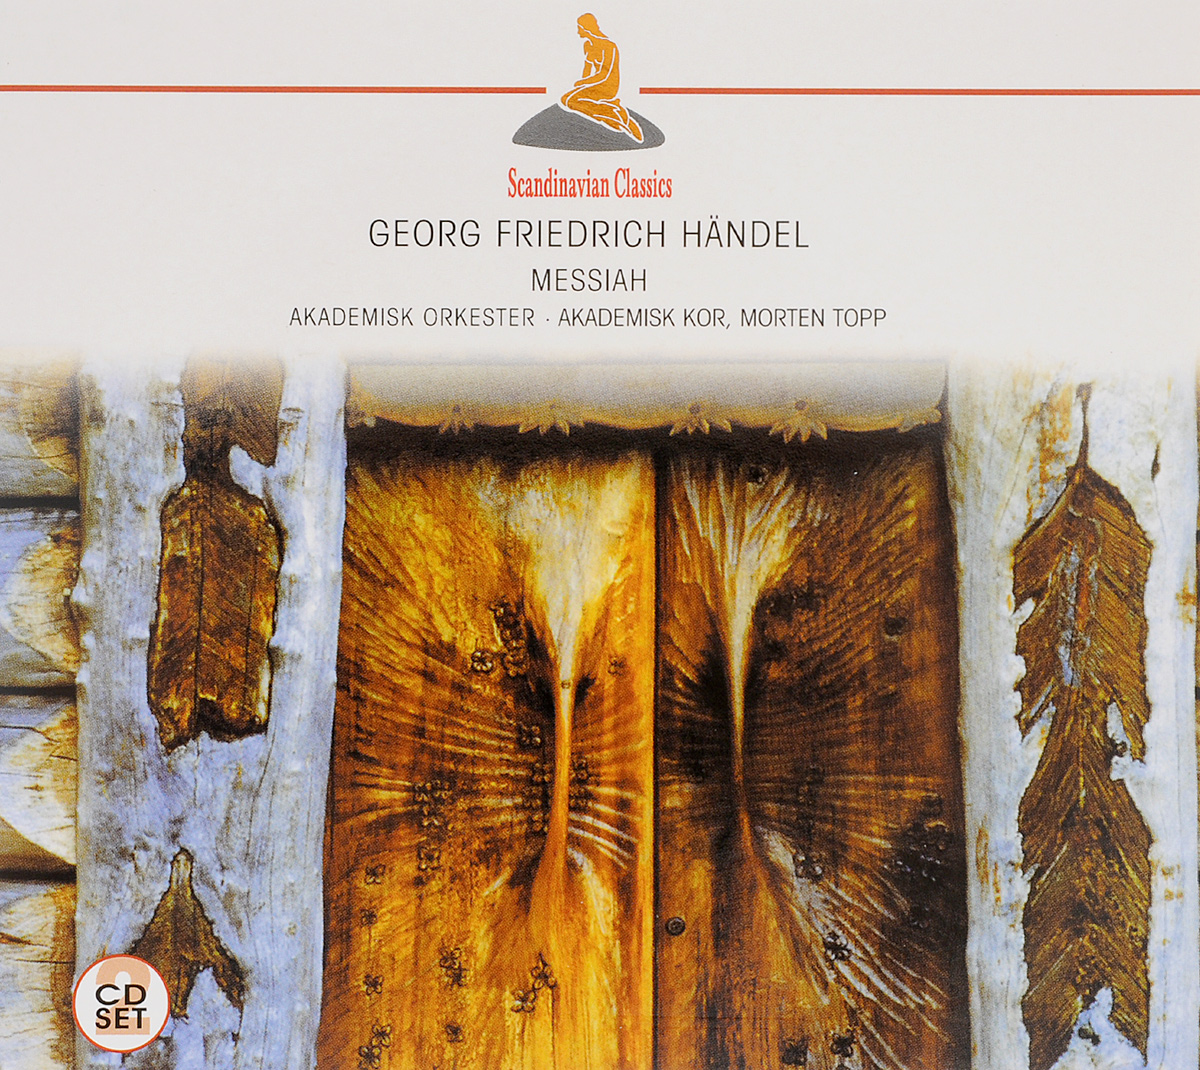 Scandinavian Classics. Morten Topp, Akademisk Orkester, Akademisk Kor. Georg Friedrich Handel. Messiah (2 CD)